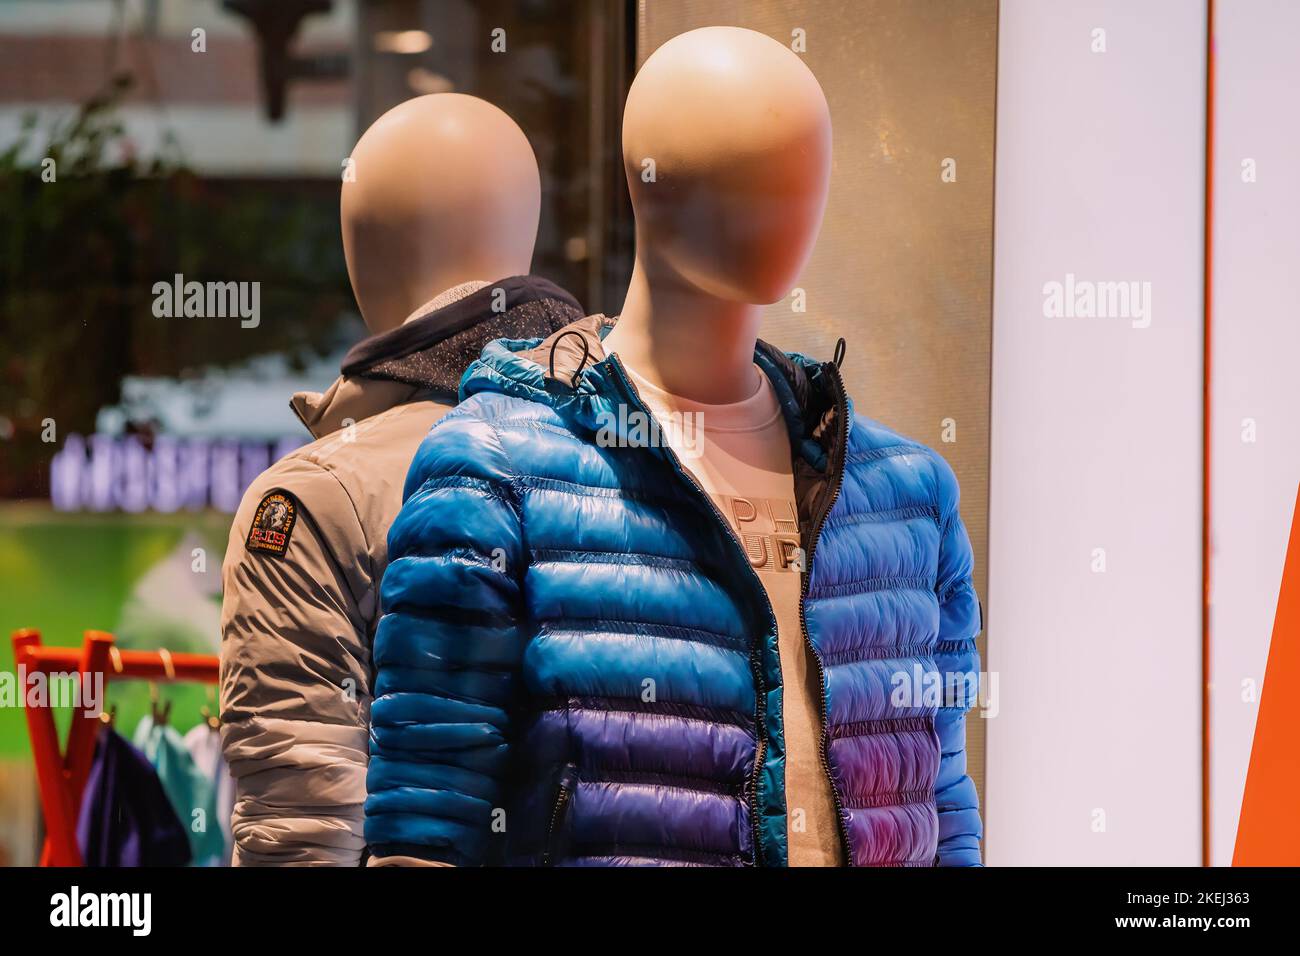 26 luglio 2022, Munster, Germania: Negozio di abbigliamento con vetrina con manichino maschile. Shopping e industria della moda Foto Stock